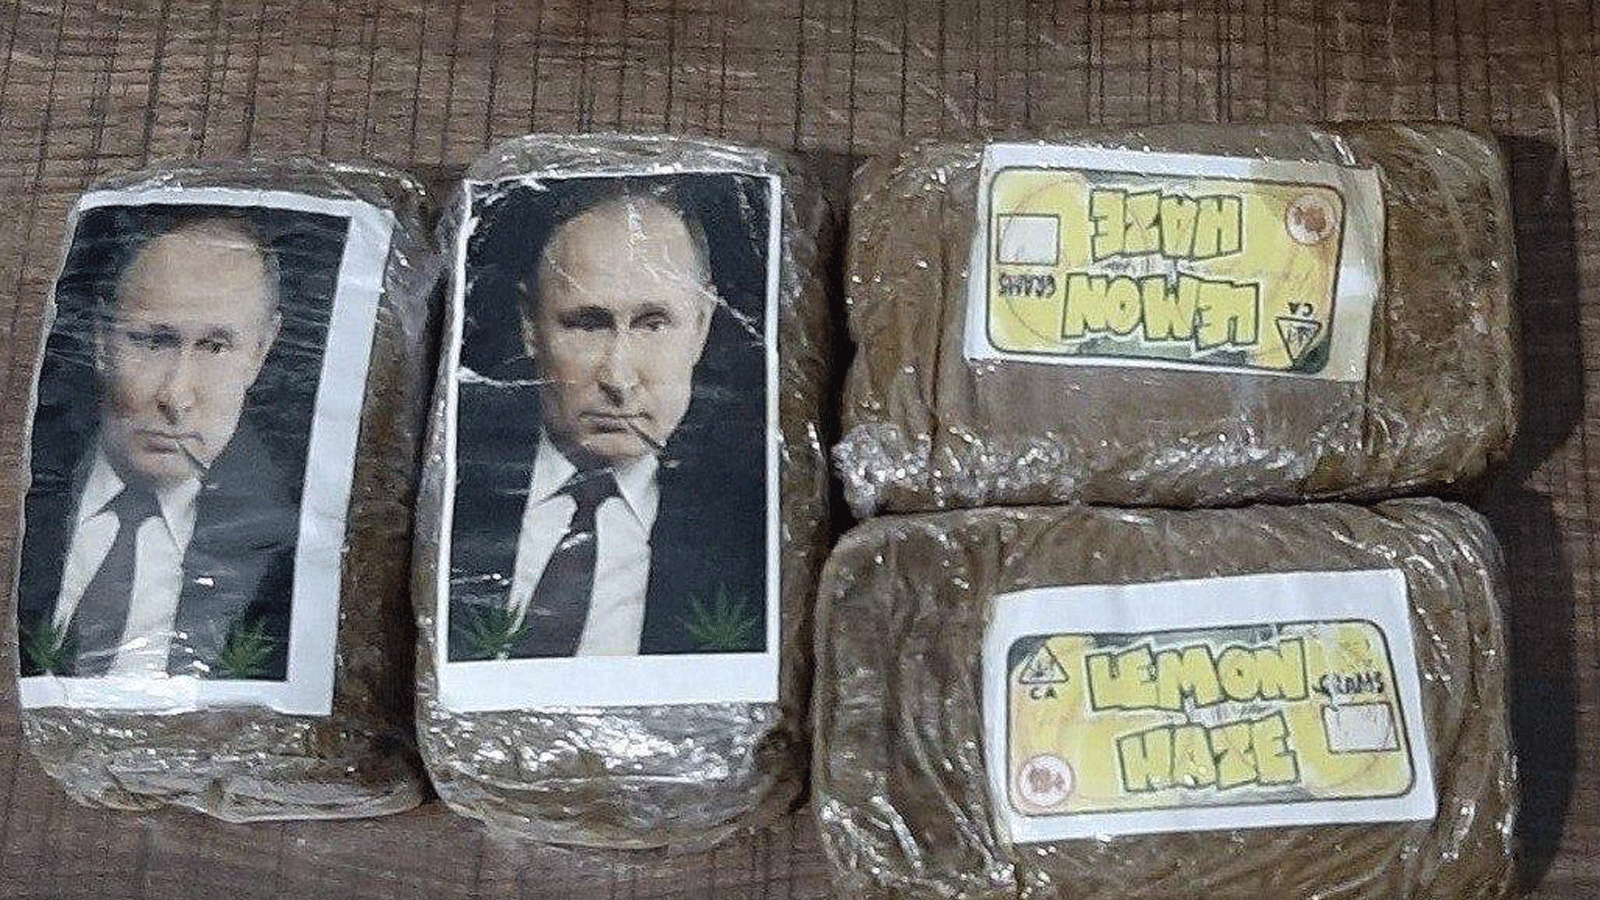 صورة متداولة عبر تويتر لحزم المخدرات المختومة برسم الرئيس الروسي فلاديمير بوتين